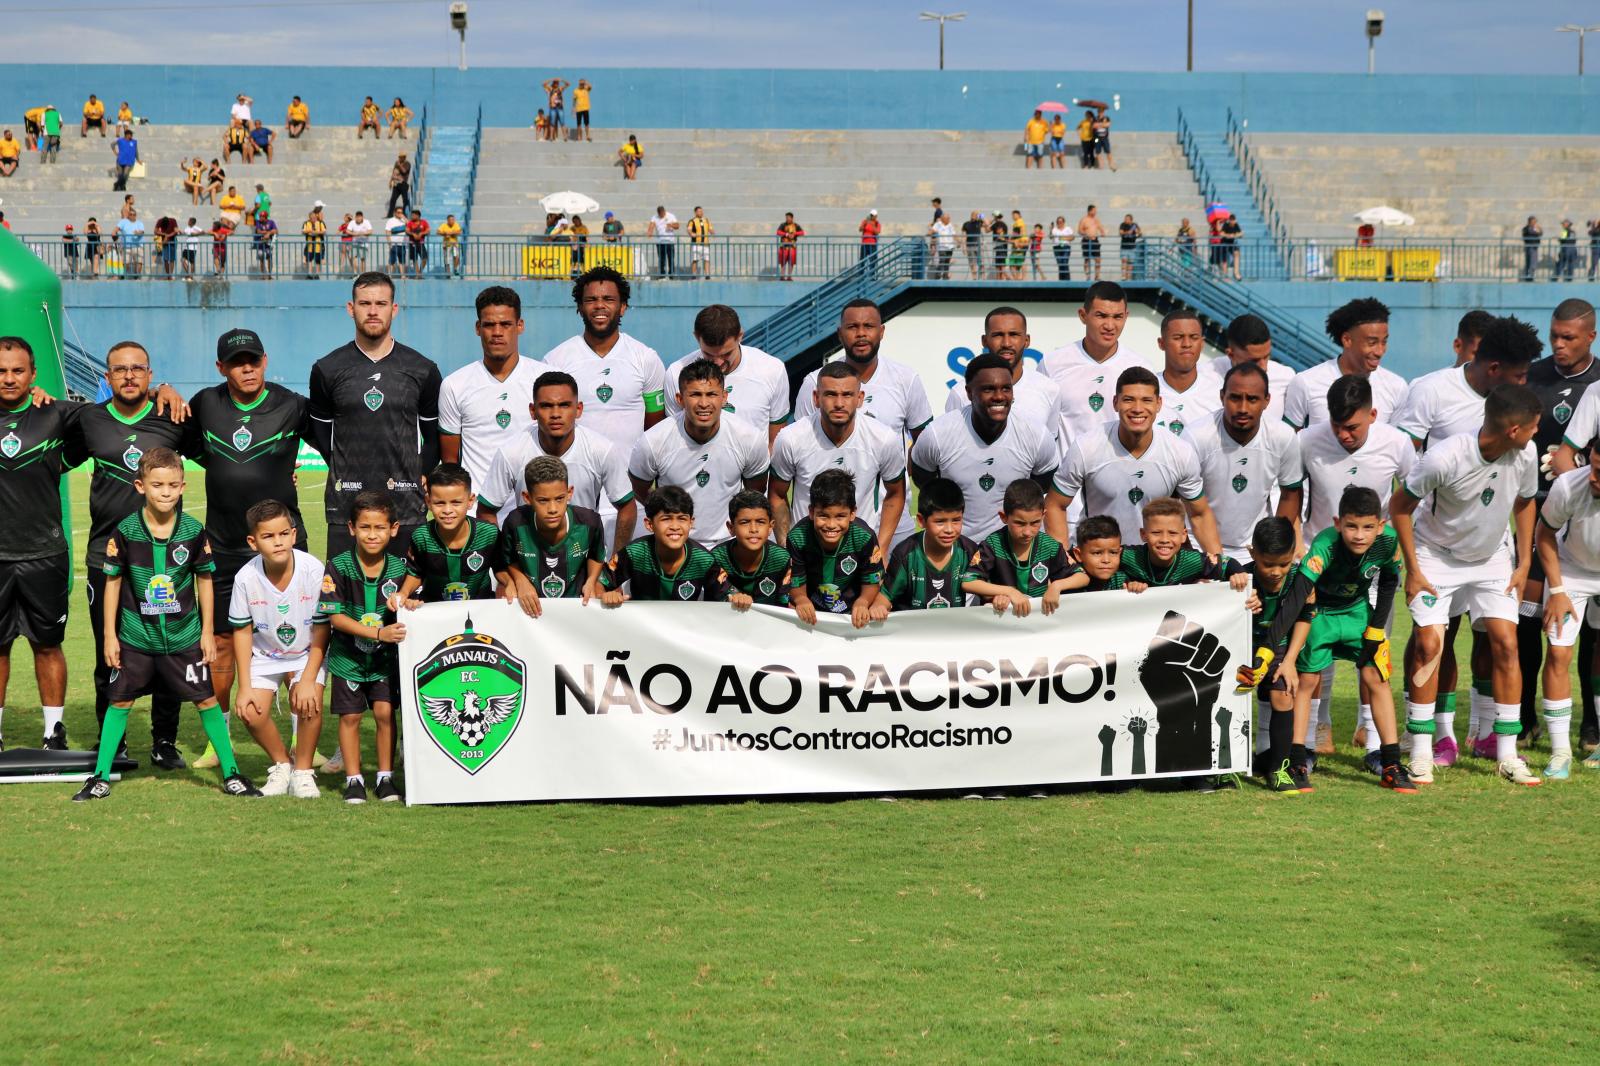 Renatinho Potiguar avalia vitória diante do Amazonas: 